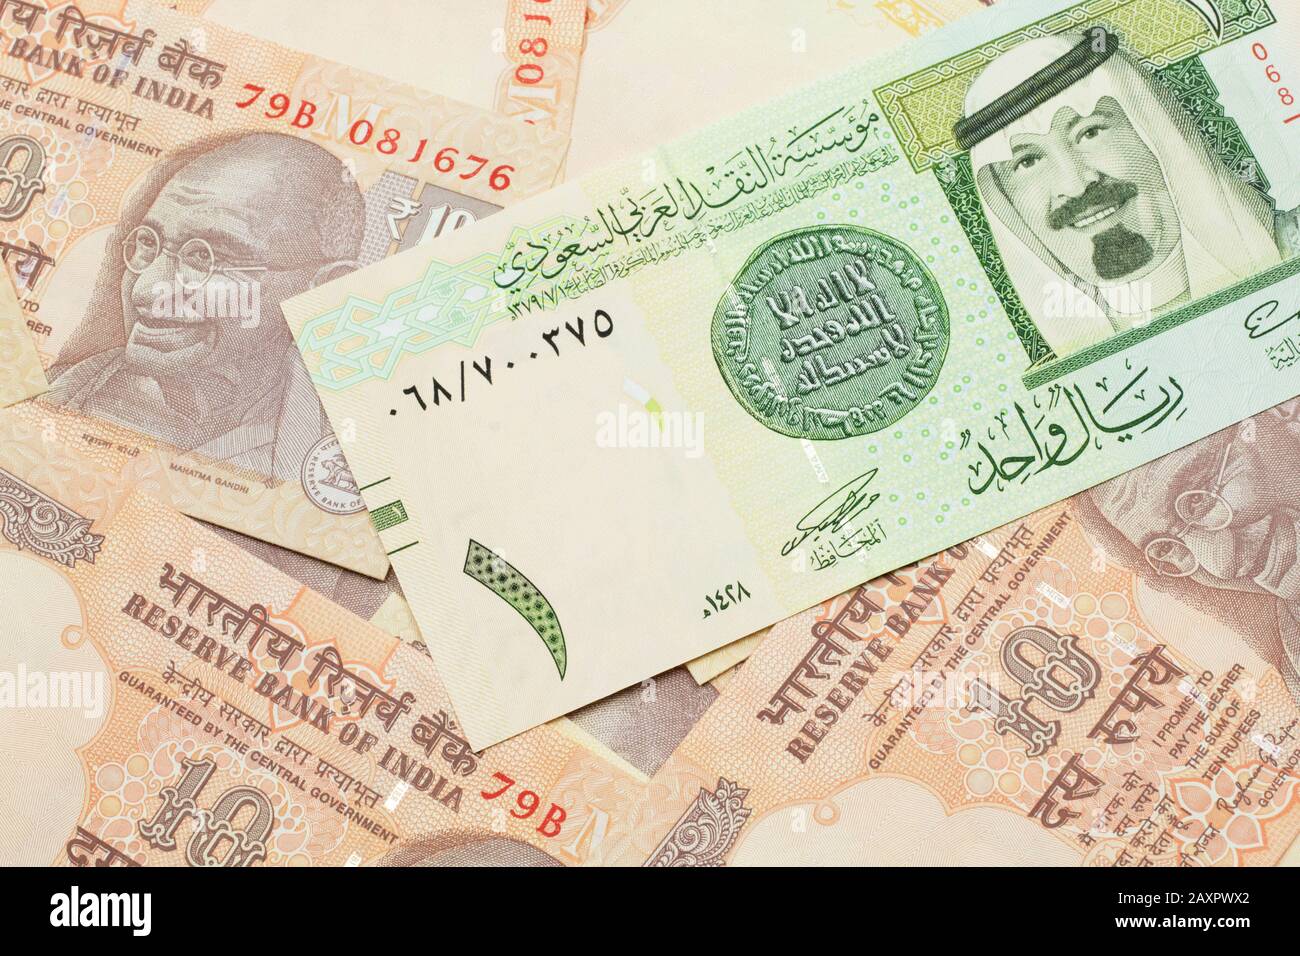 saudi 1 riyal india how much rupees , saudi riyal india